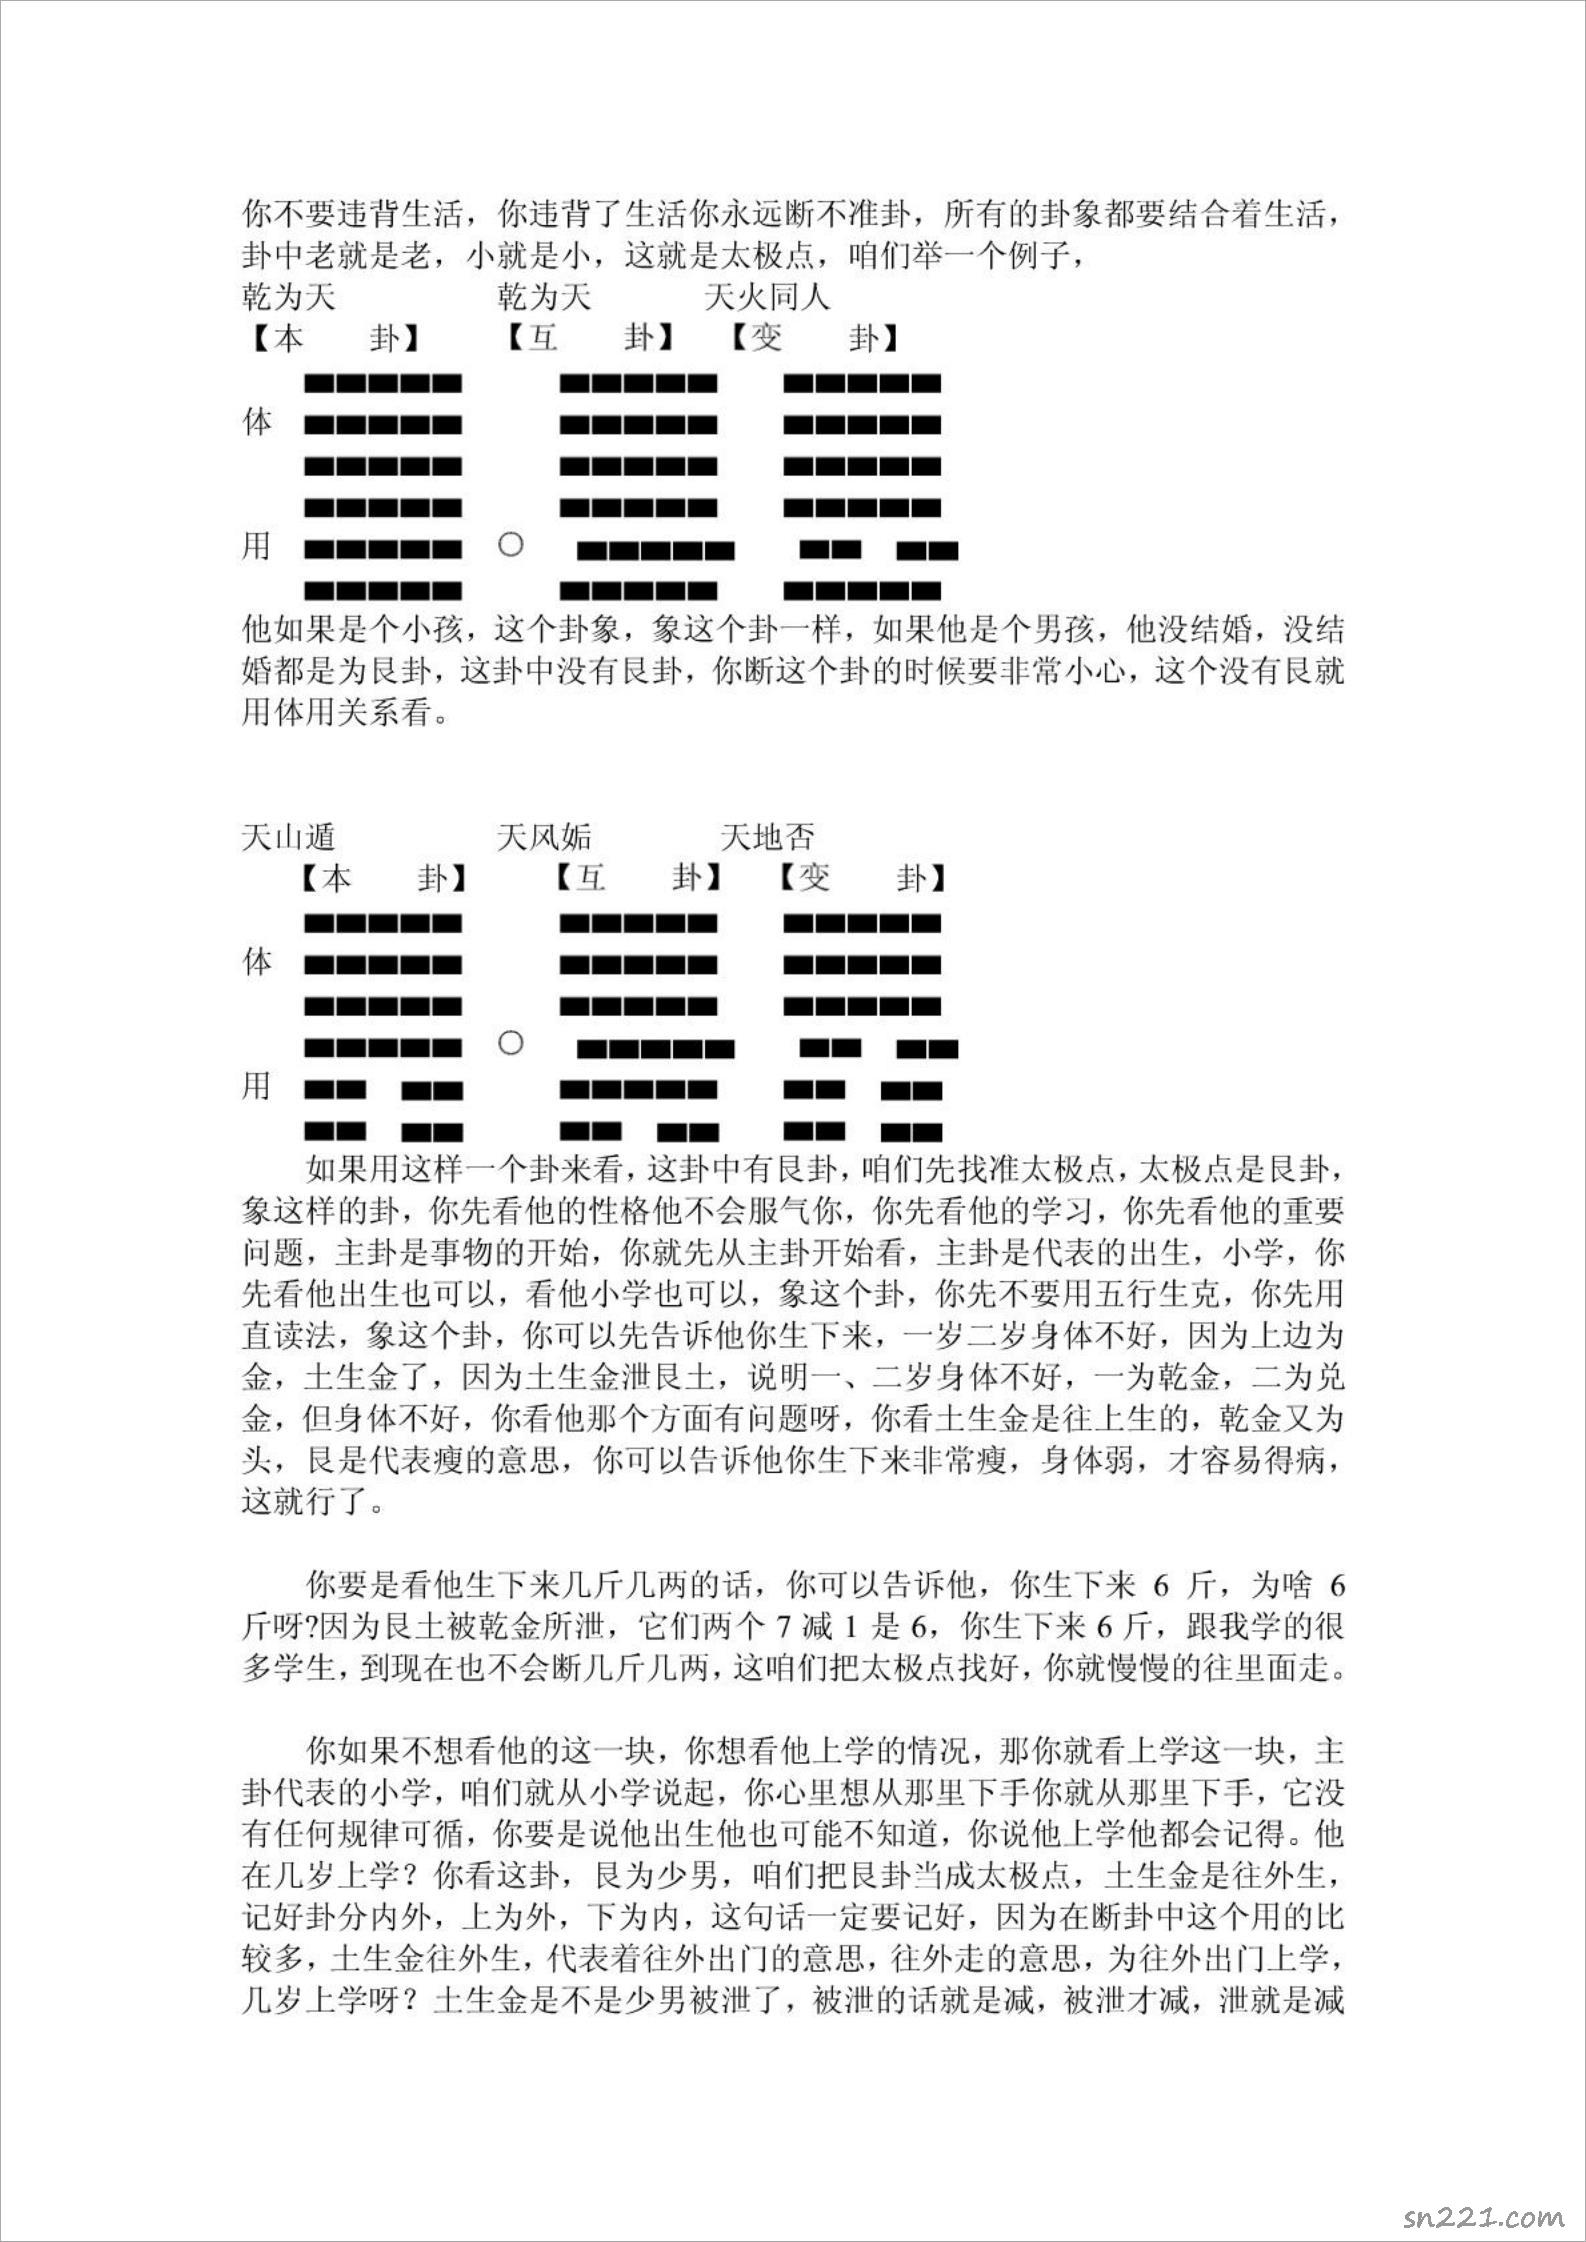 2009年10月韓海軍老師講課整理.pdf